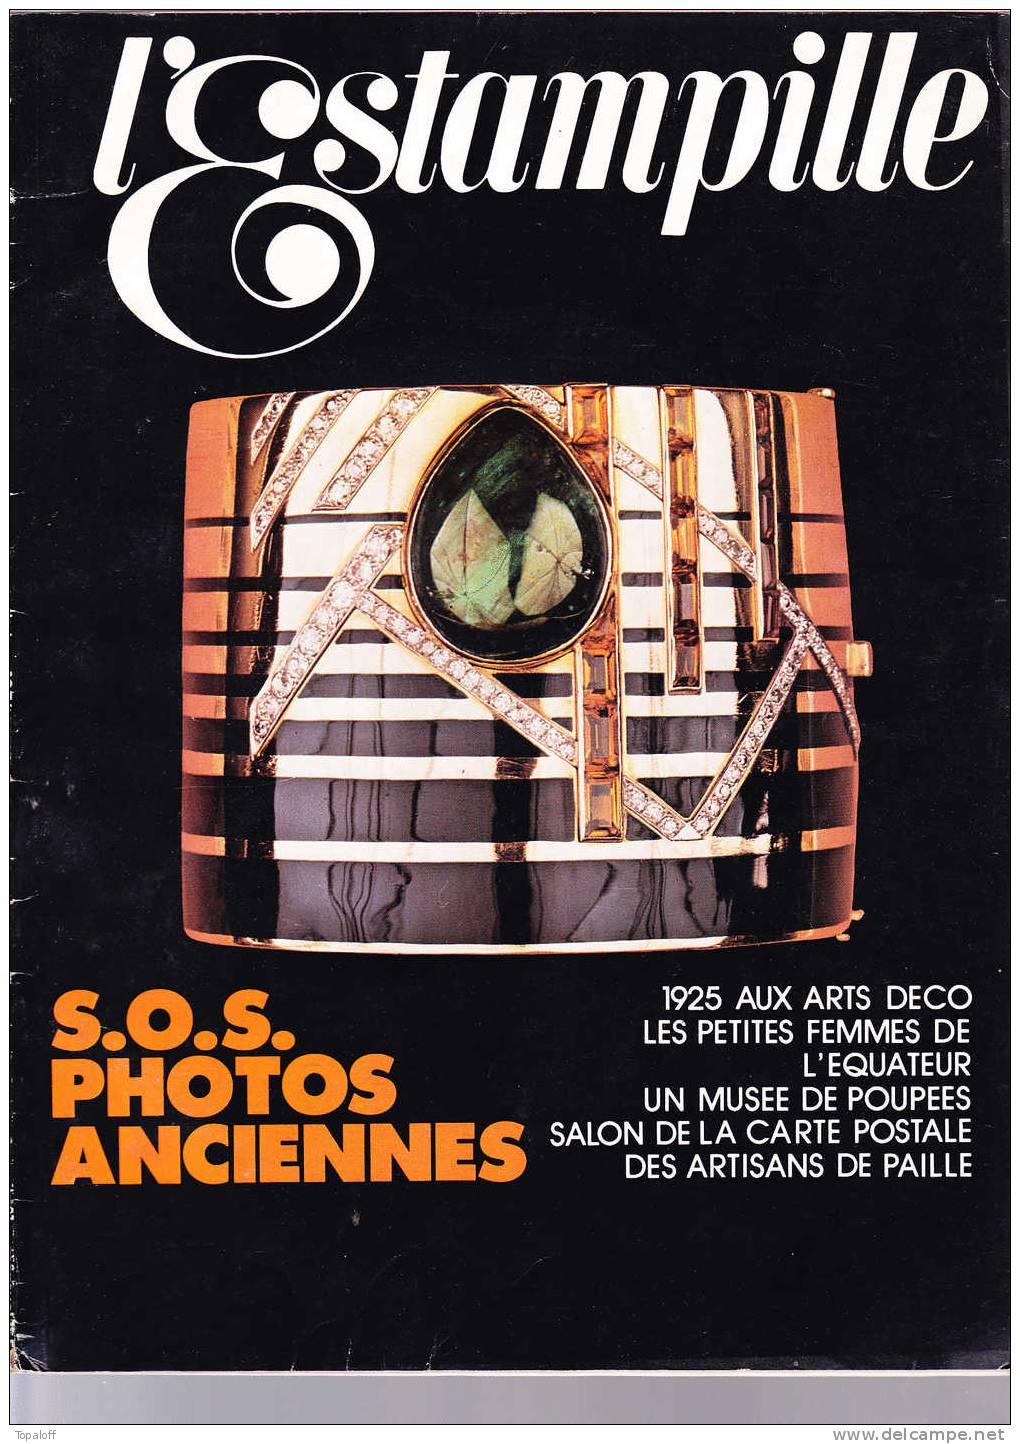 L'ESTAMPILLE N°81 Octobre 1976 84 Pages Poupées - Art Déco - Brocantes & Collections